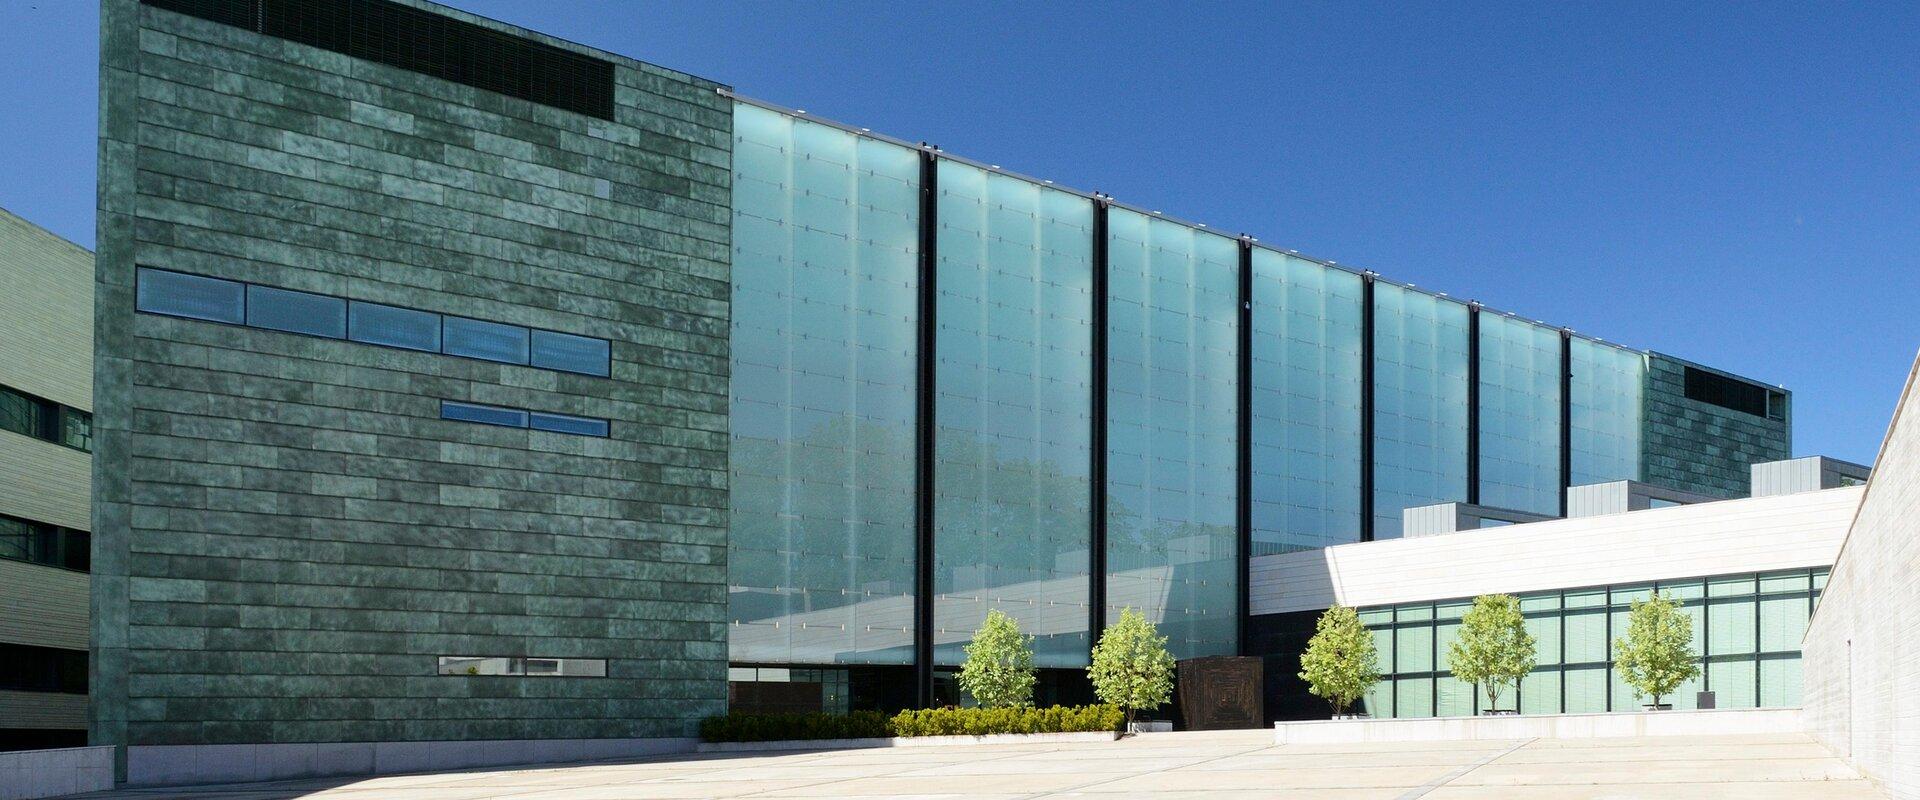 Kumu on Eesti Kunstimuuseumi peahoone ning suurim ja esinduslikem näitusepaik Eestis. 2006. aastast avatud Kumu kunstimuuseumi ülesandeks on hoida ja 